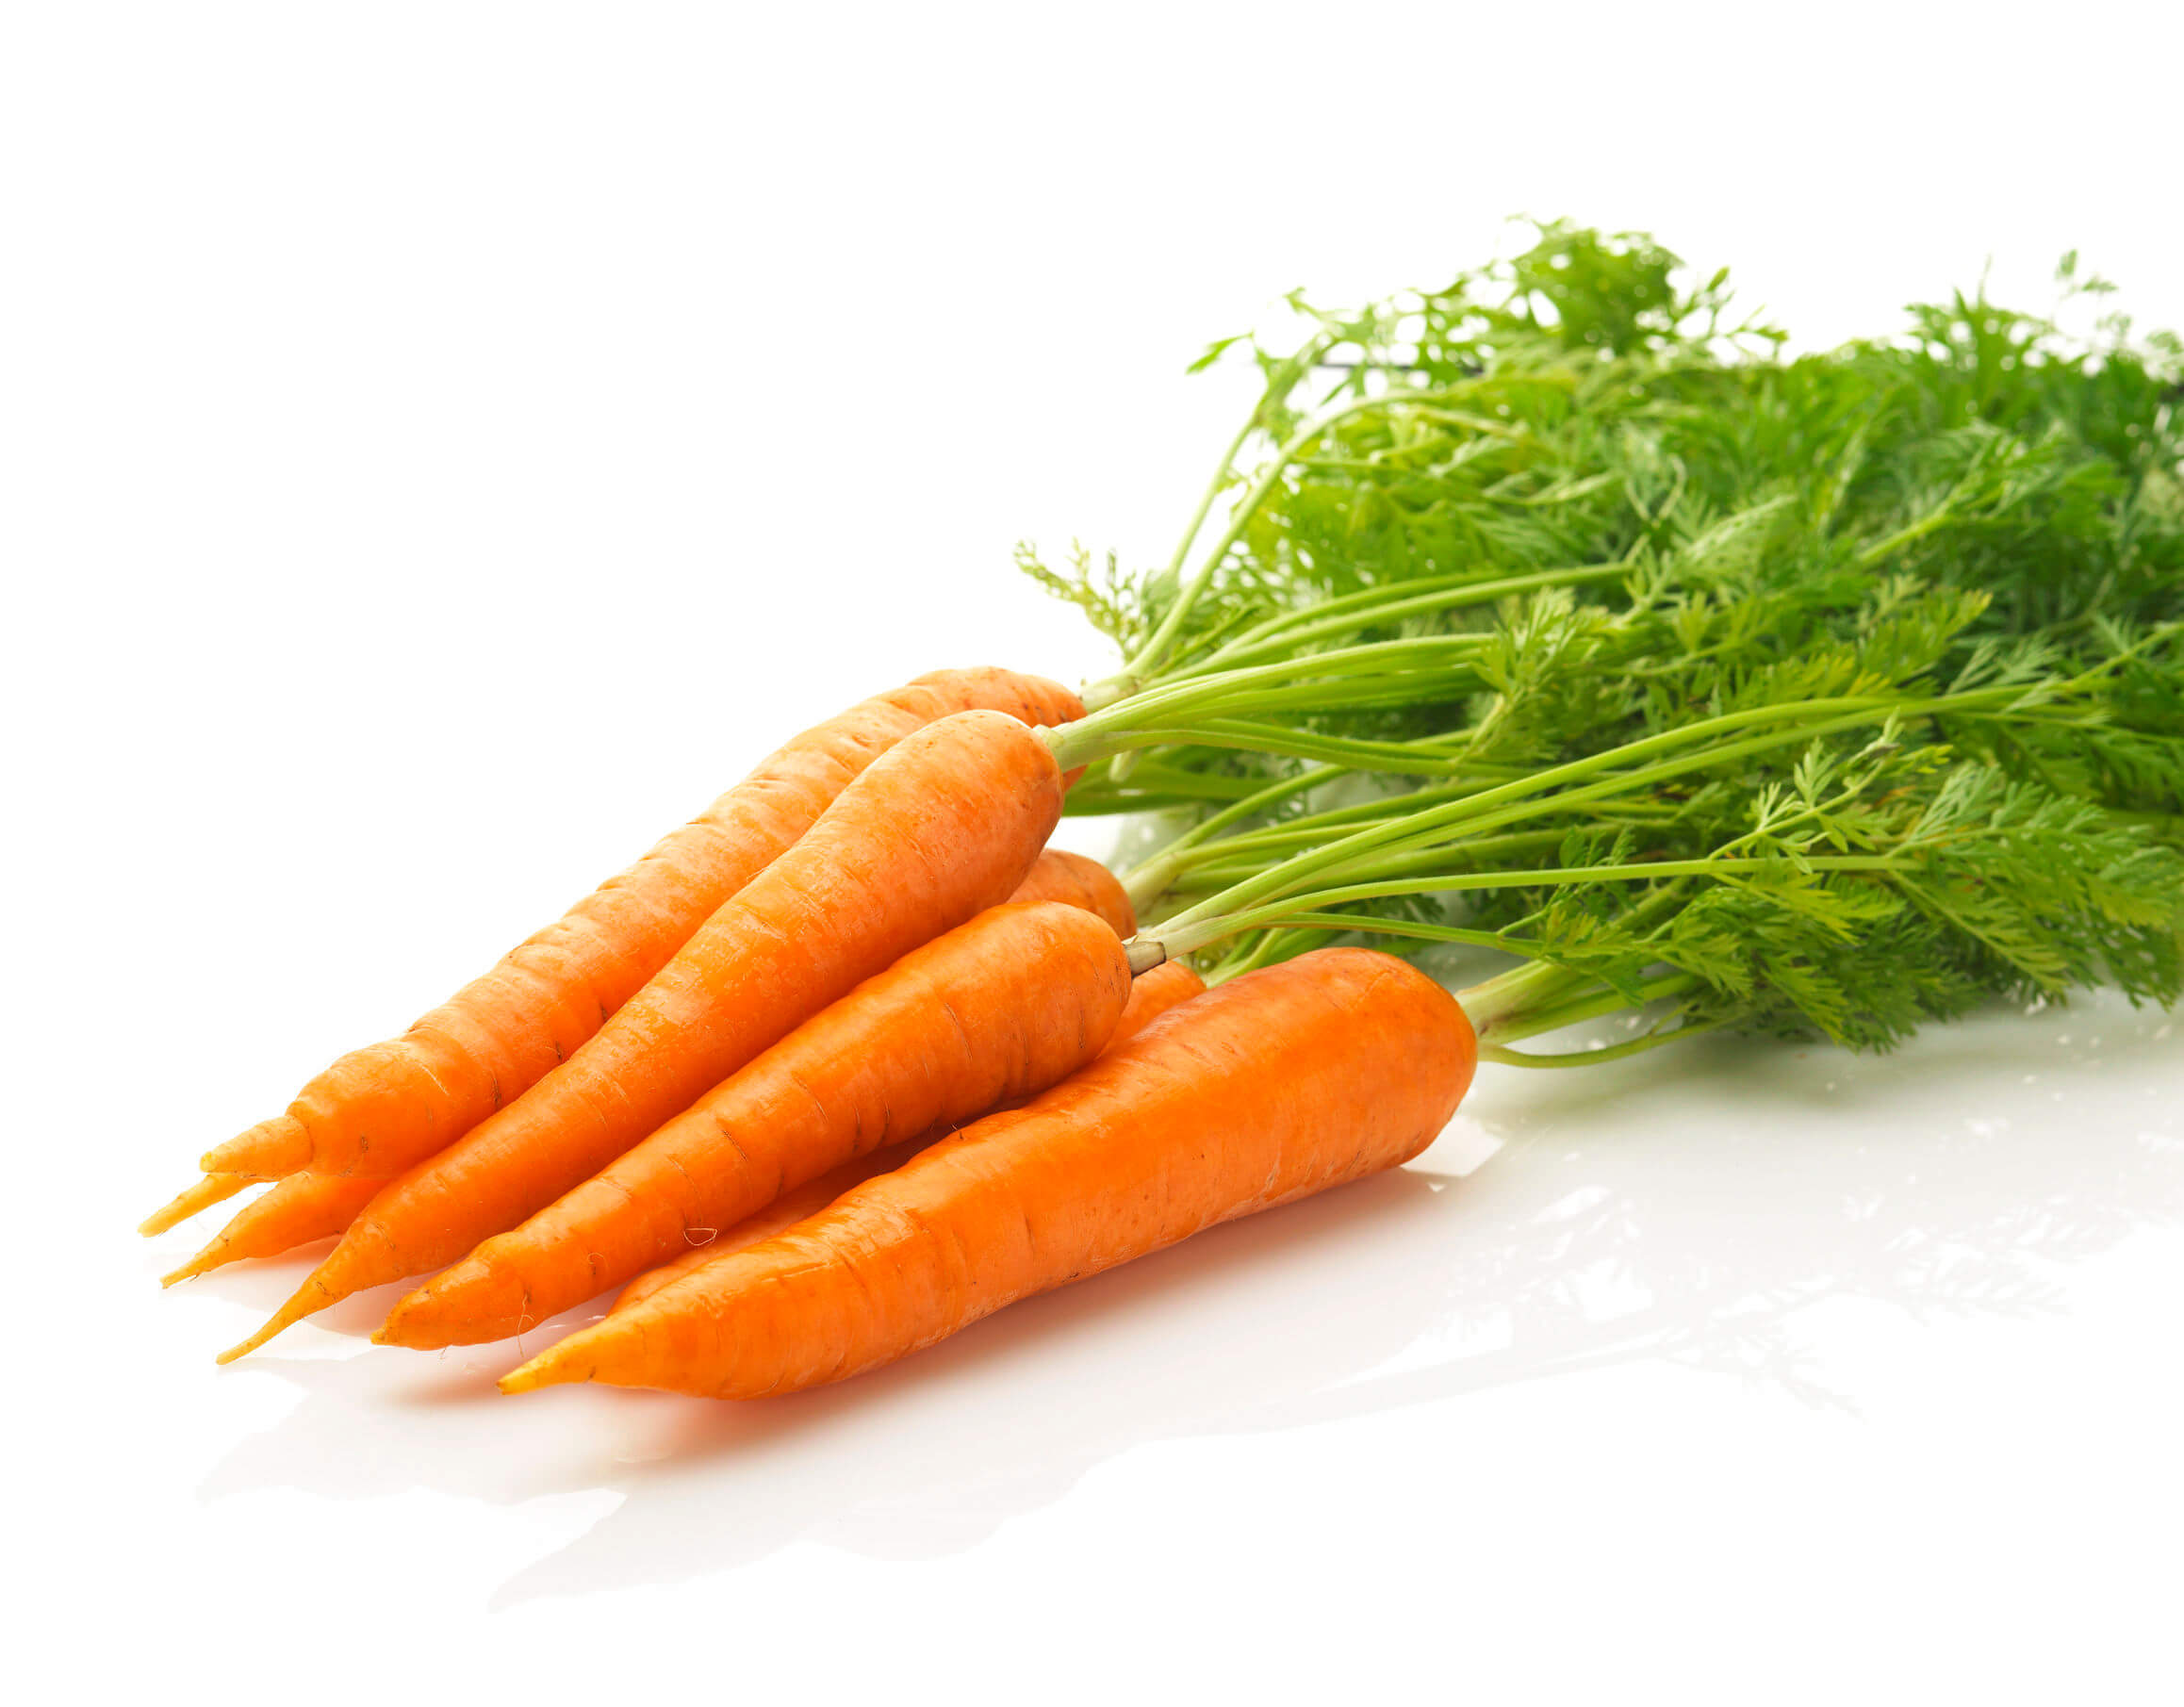 As cenouras são uma excelente fonte de betacarotenos